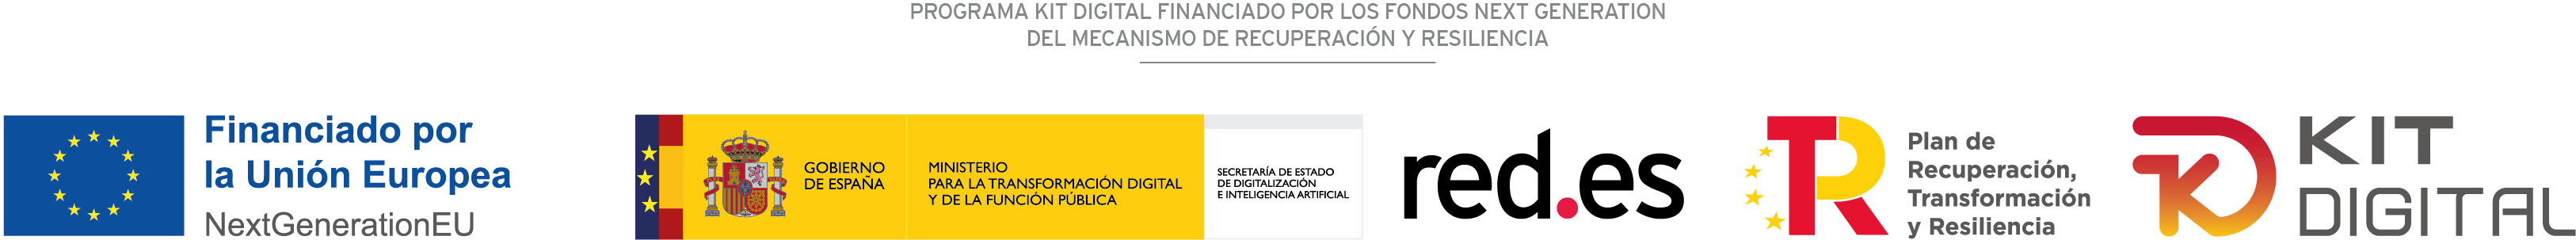 PROGRAMA KIT DIGITAL COFINANCIADO POR LOS FONDOS NEXT GENERATION (EU) DEL MECANISMO DE RECUPERACIÓNY RESILENCIA